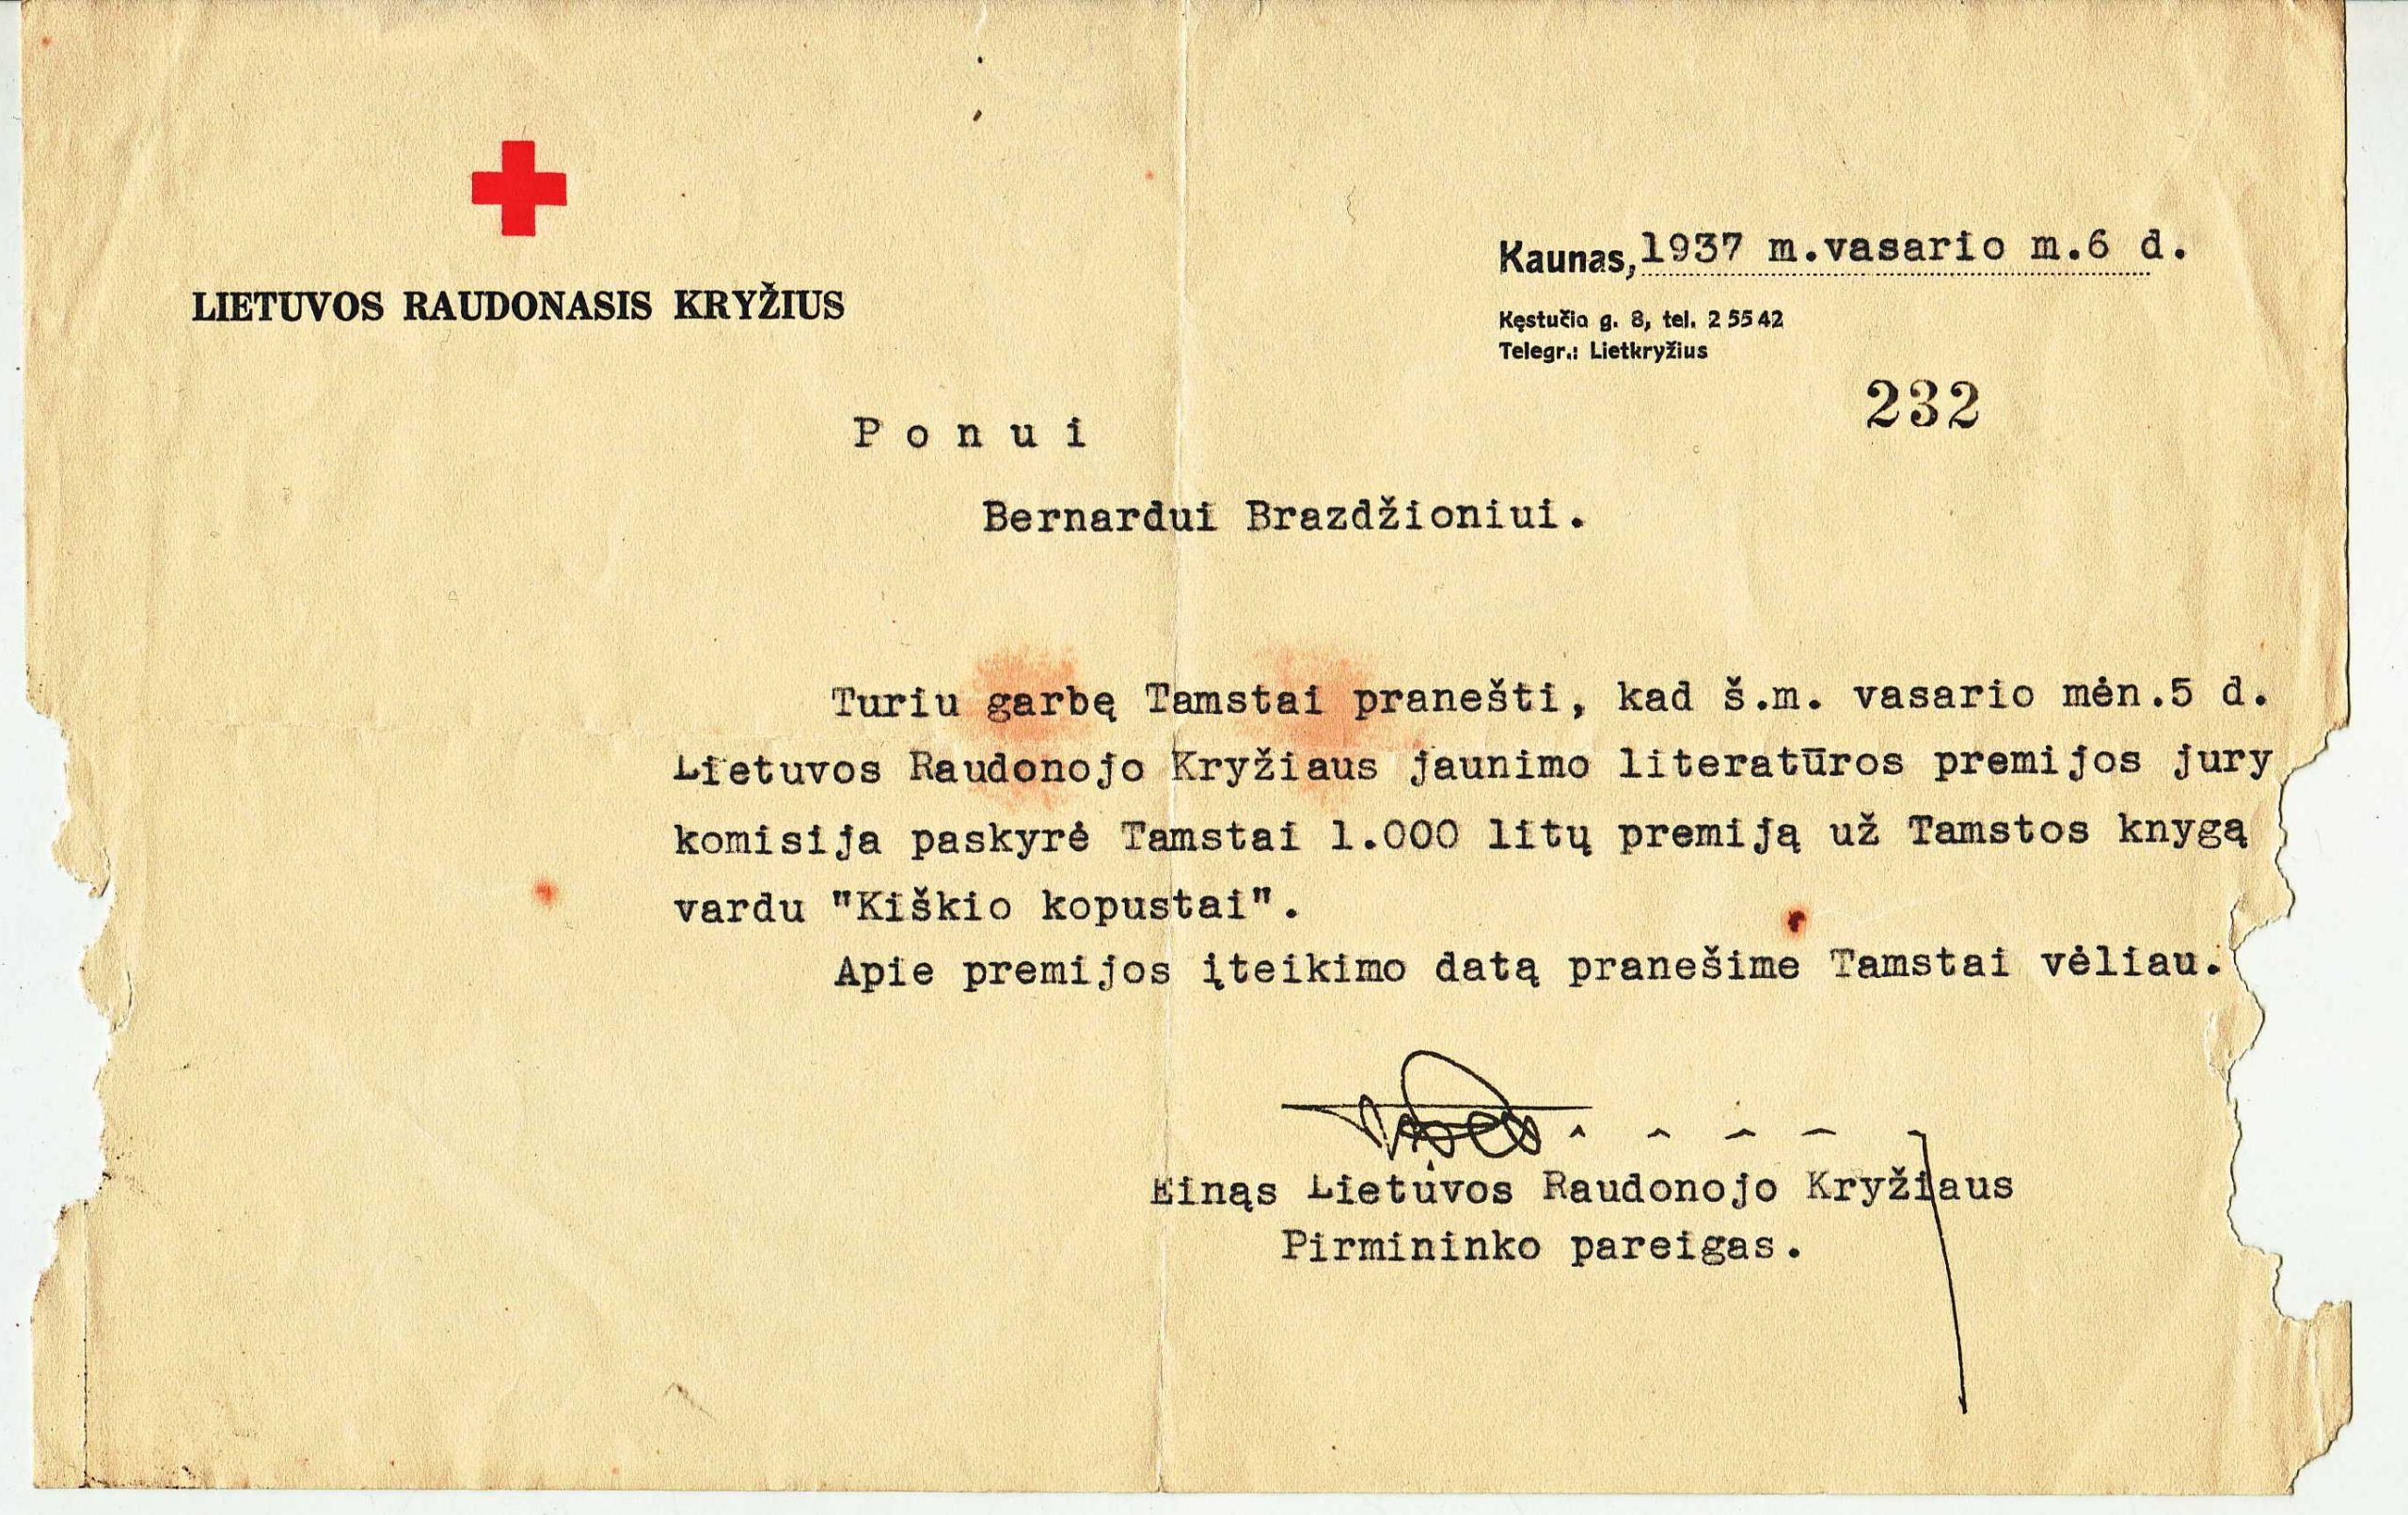 Pranešimas B. Brazdžioniui dėl Lietuvos Raudonojo kryžiaus jaunimo premijos paskyrimo už knygelę vaikams „Kiškio kopūstai“. 1937 m. vasario 6 d.